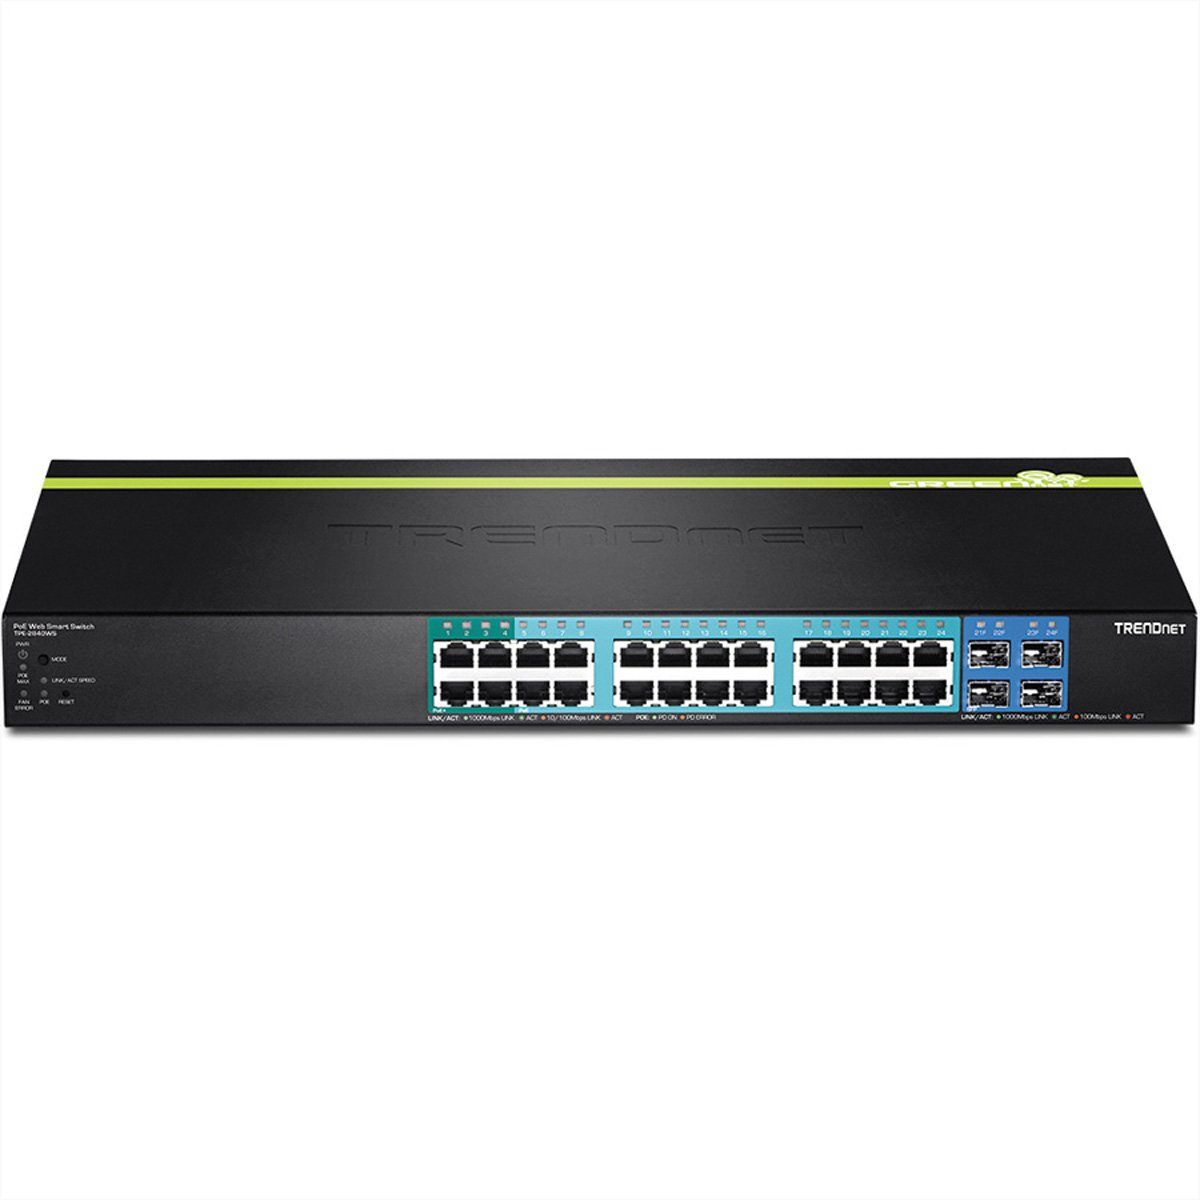 Trendnet Gigabit Switch TPE-2840WS Smart Netzwerk-Switch 24 PoE/PoE+ 28-Port 4 SFP 195W POE+